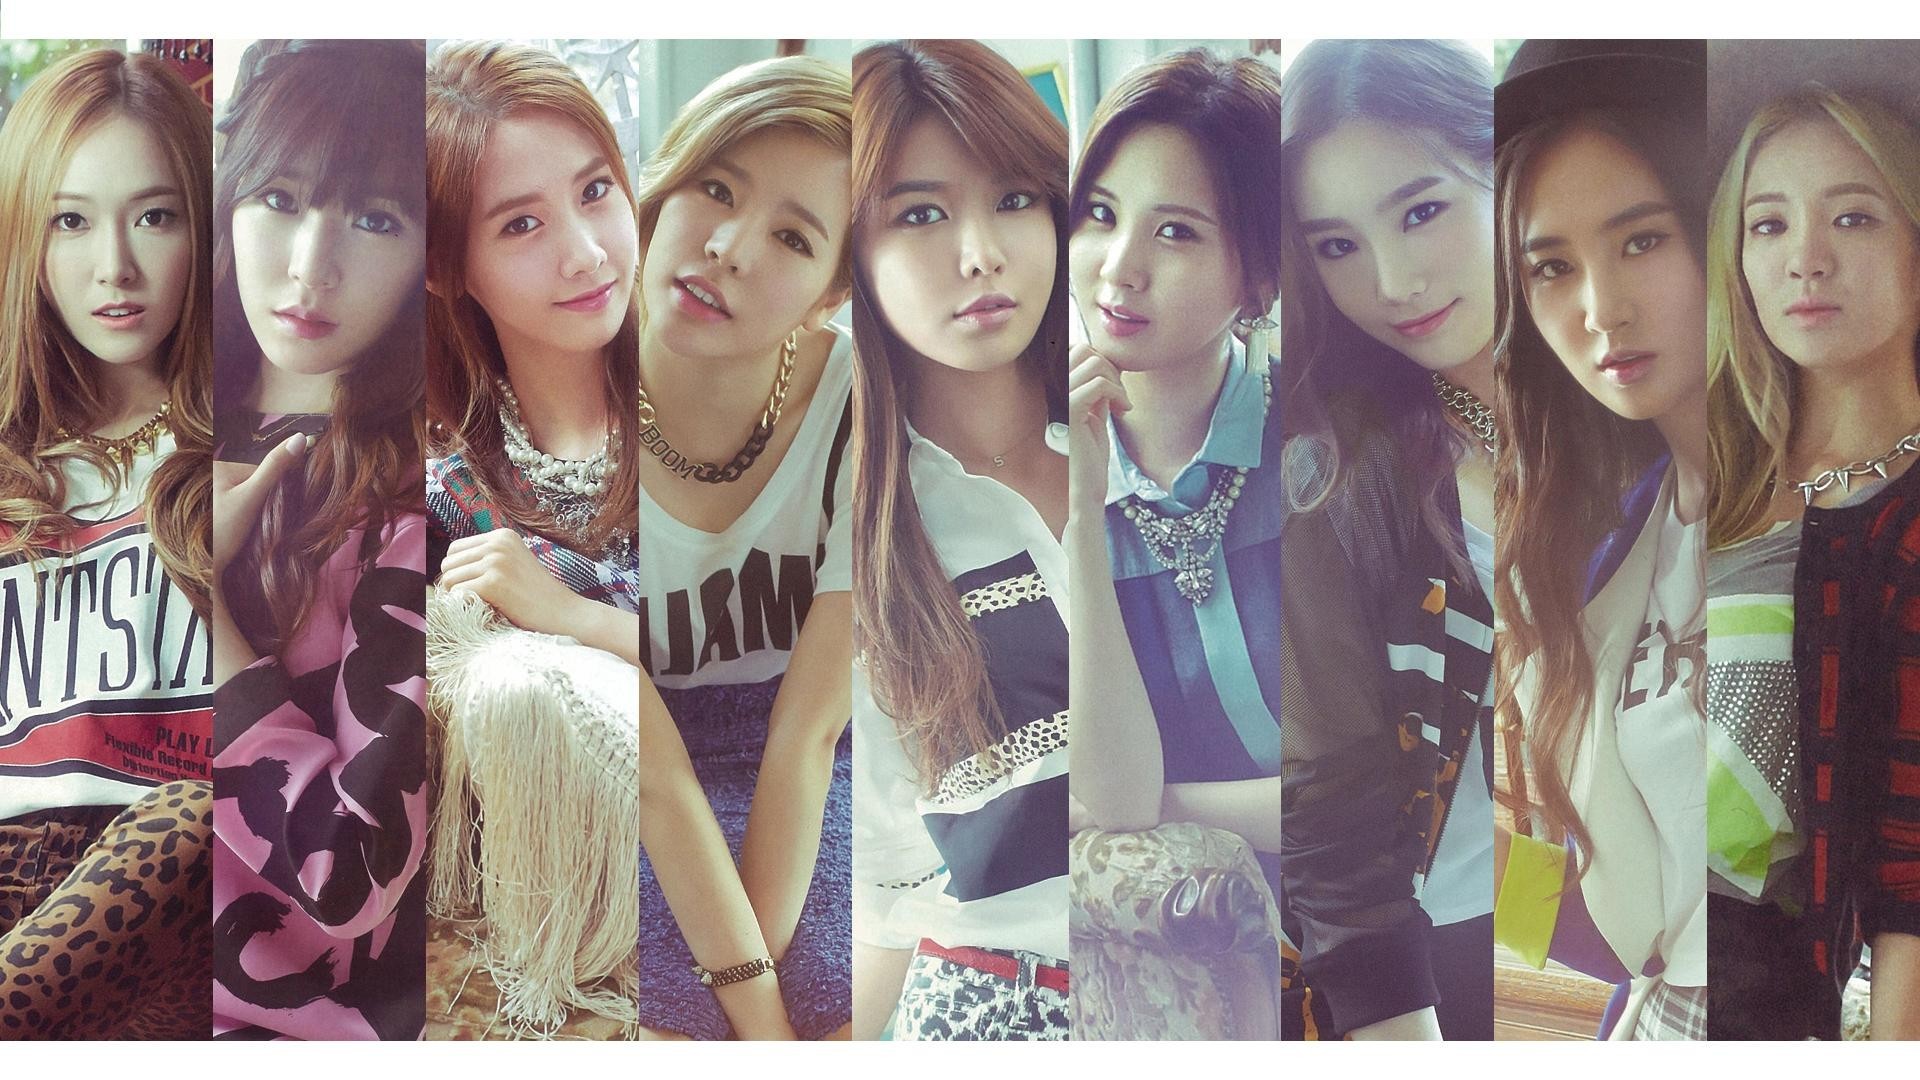 1920x1080, Snsd, Girls Generation, Asian, Model, Musicians, - Girls Generation Wallpaper Hd - HD Wallpaper 